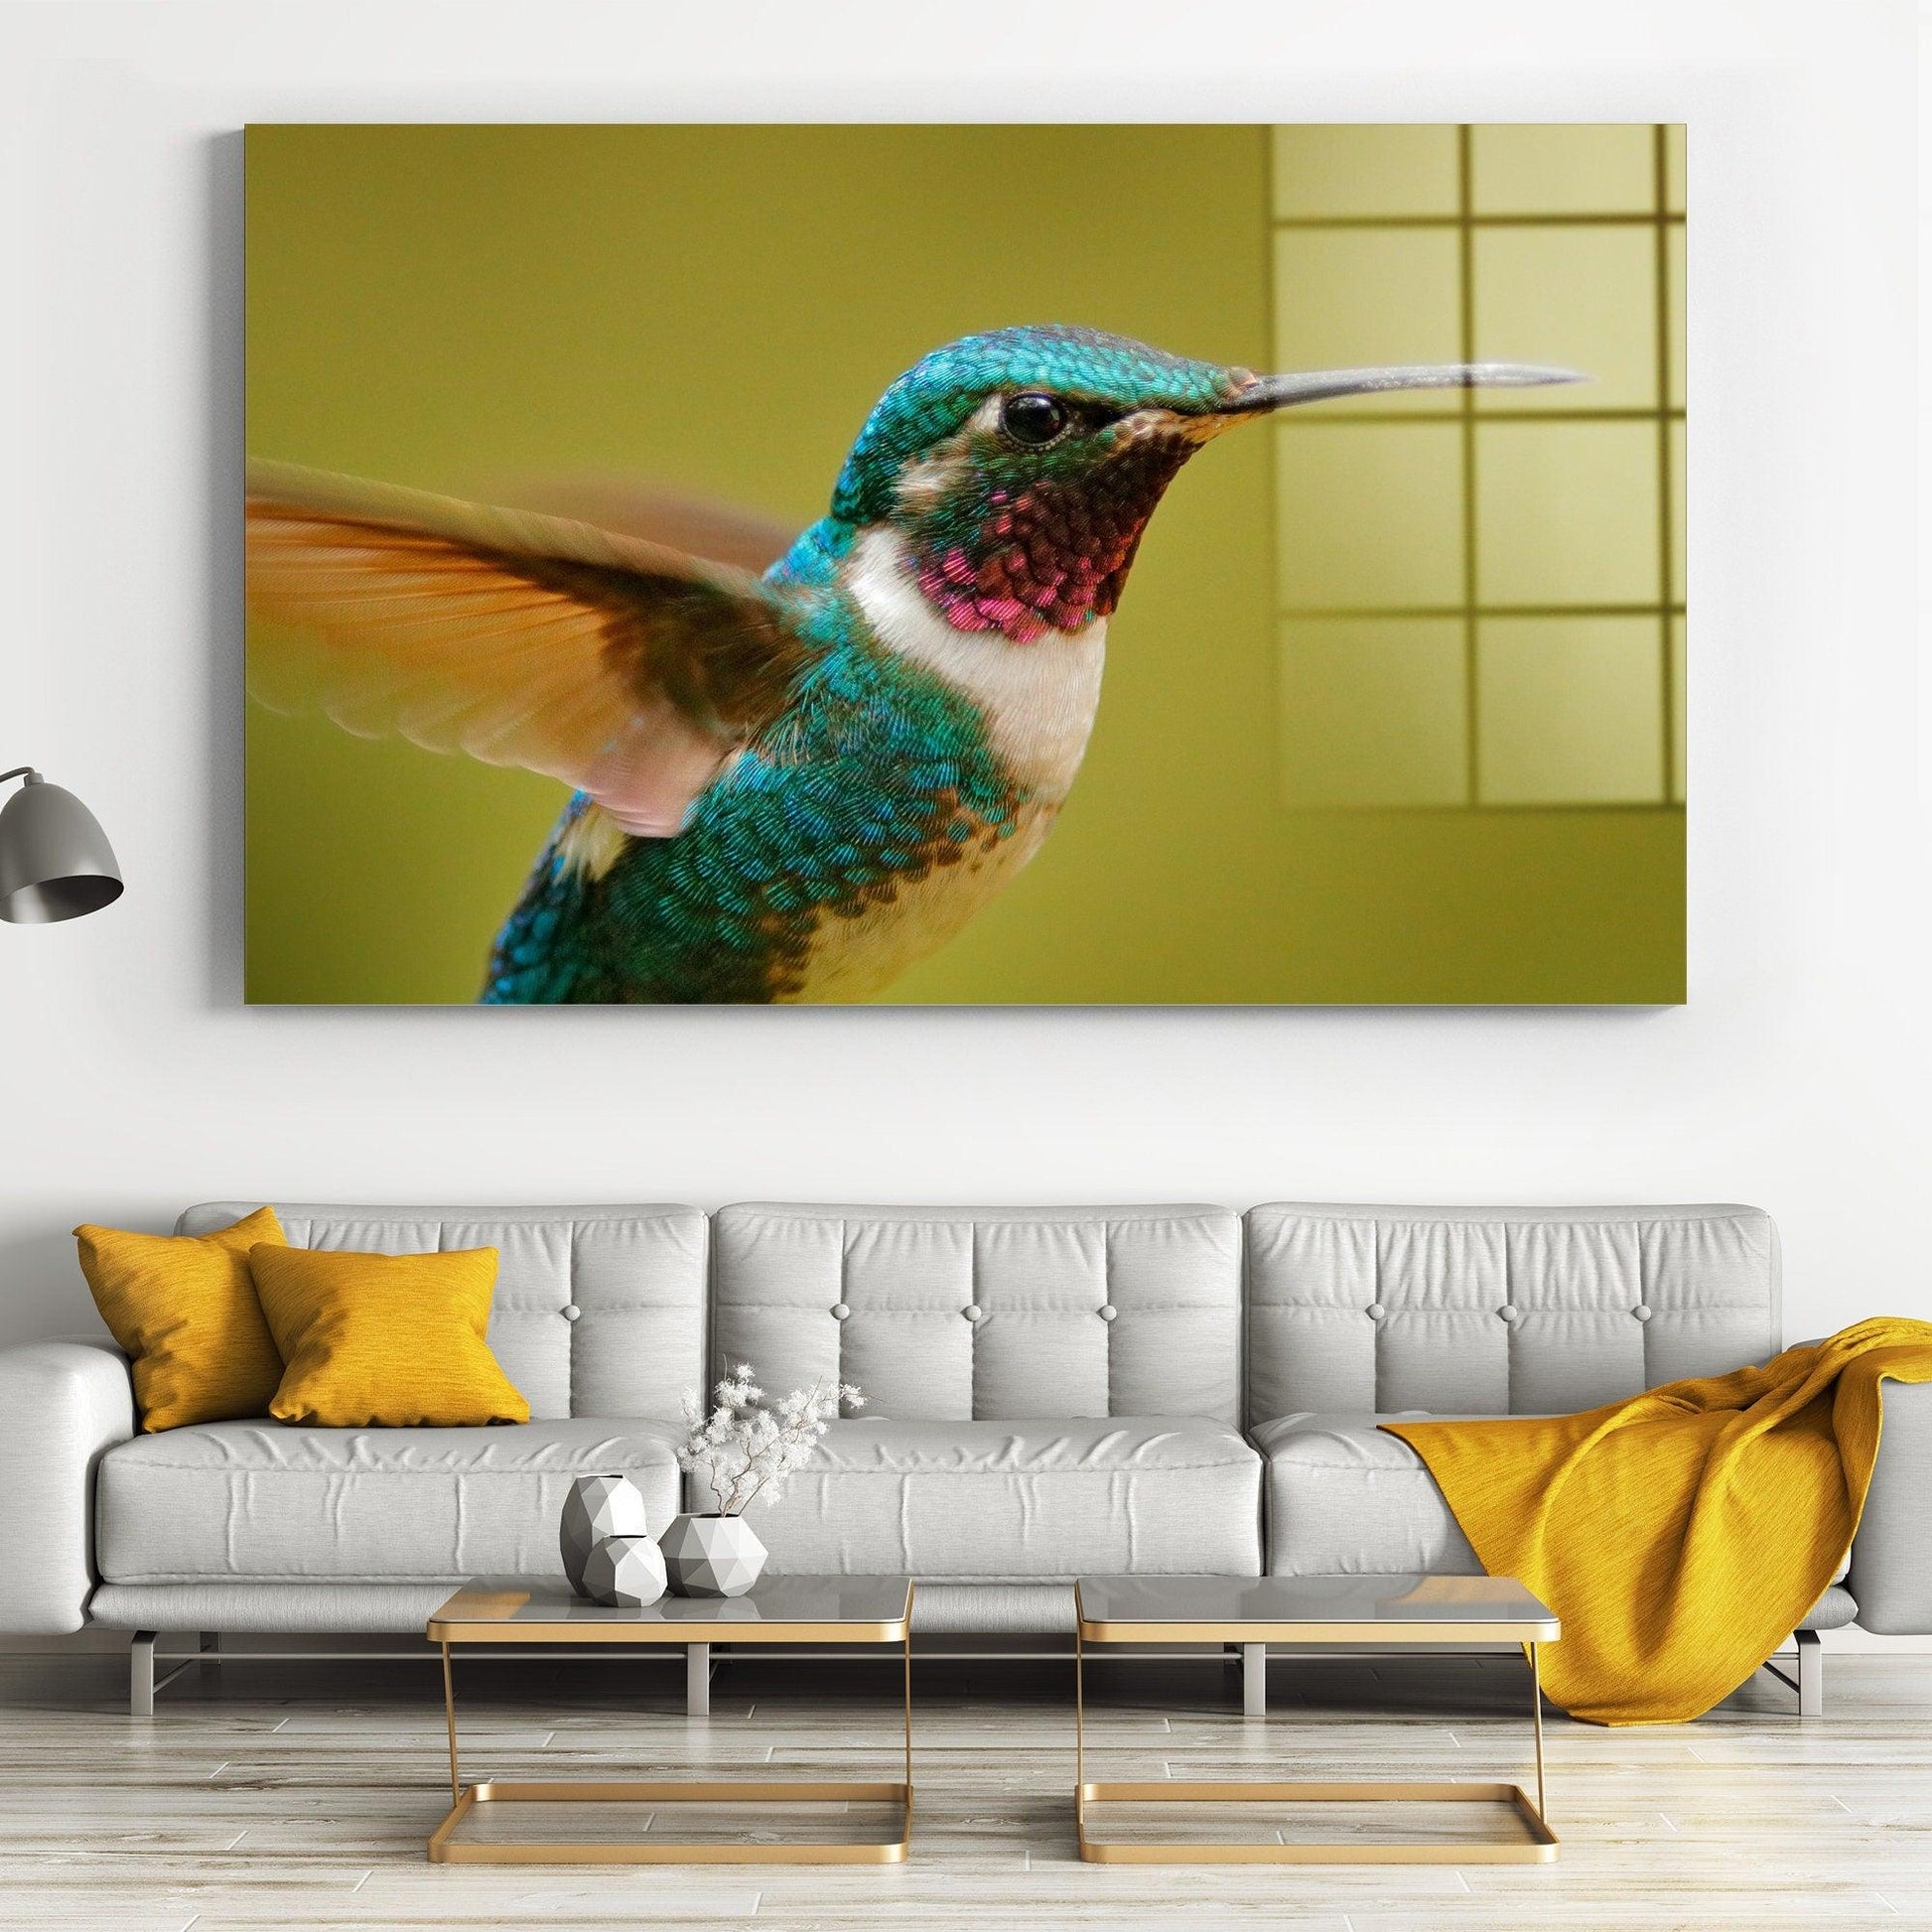 Hummingbird Flying Canvas wall Art Print | Hummingbird Tempered Glass or Canvas Printing Wall Art , Natural And Vivid Wall Decor